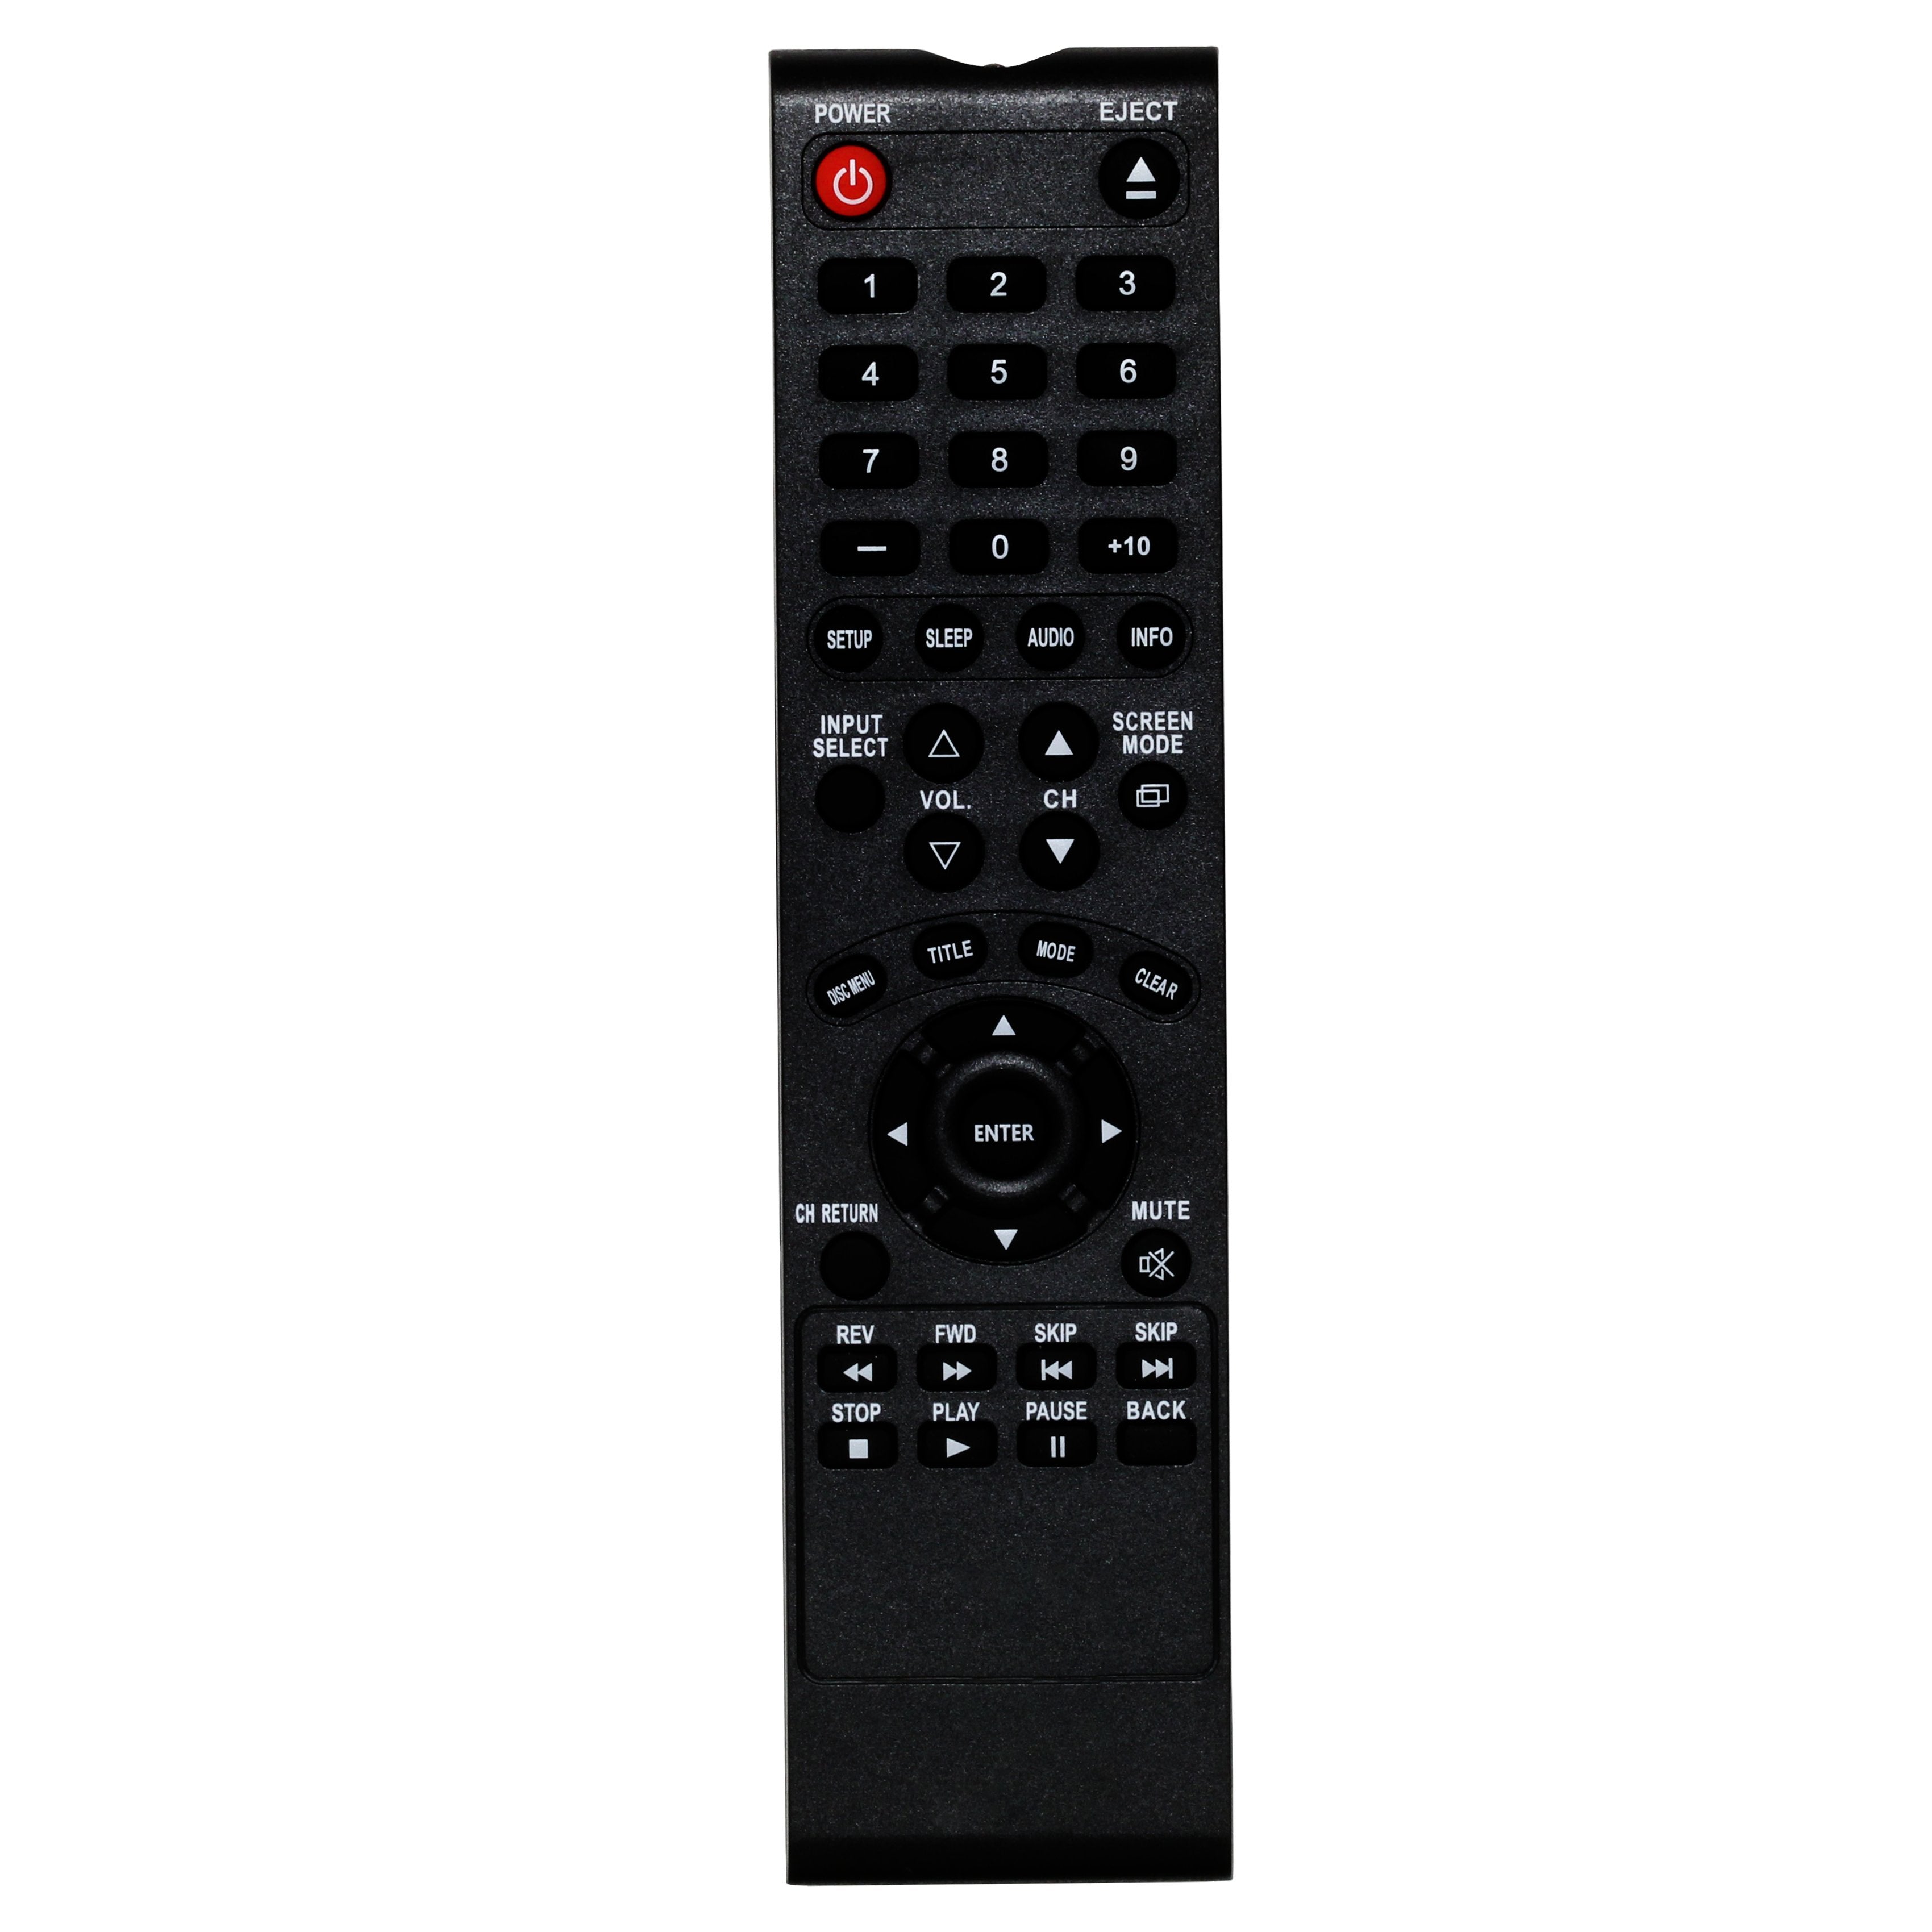 Sylvania RLX310WA01  TV Remote